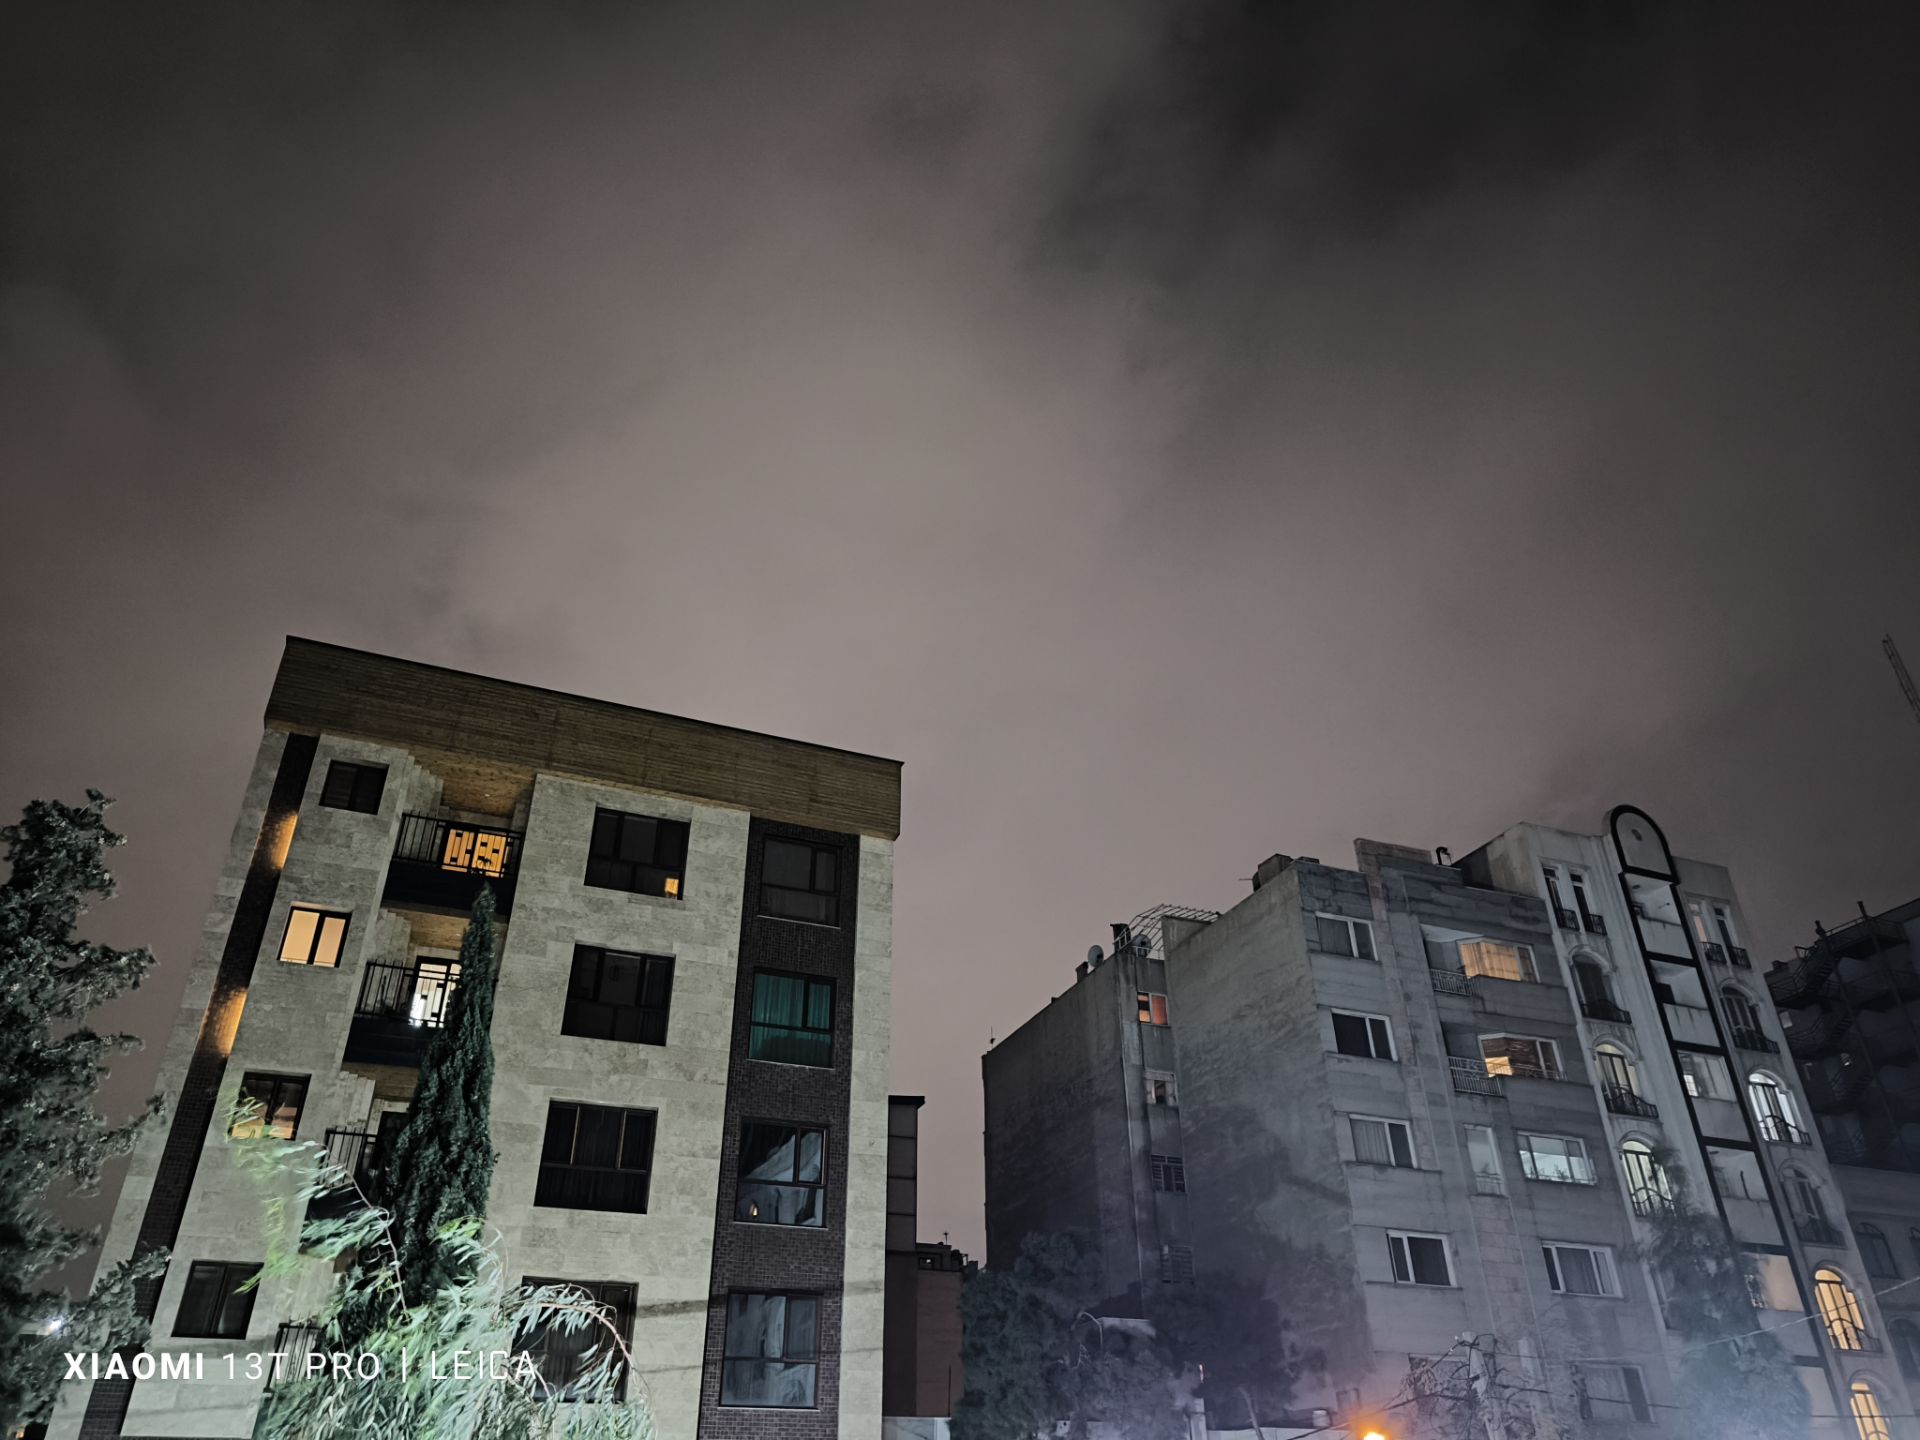 عکسی از نمای بیرون ساختمان در شب ابری